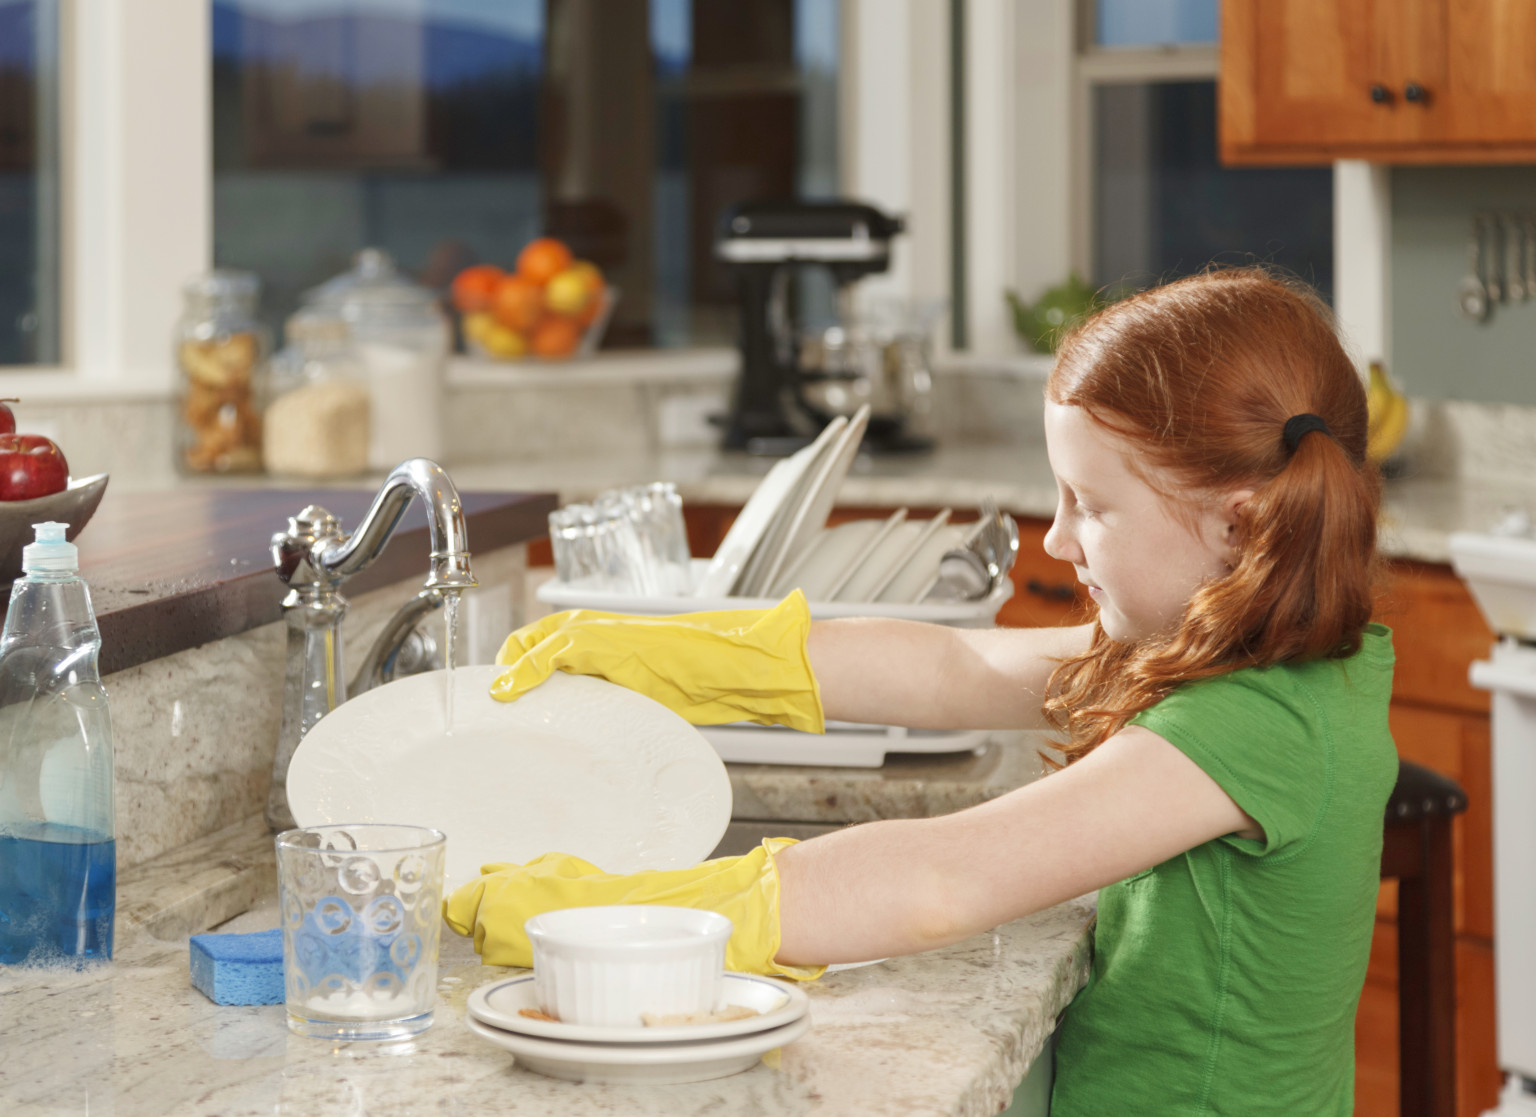 Helen wash the dishes for fifteen minutes. Мыть посуду. Мытье посуды для детей. Ребенок моет посуду. Помогать маме по дому.